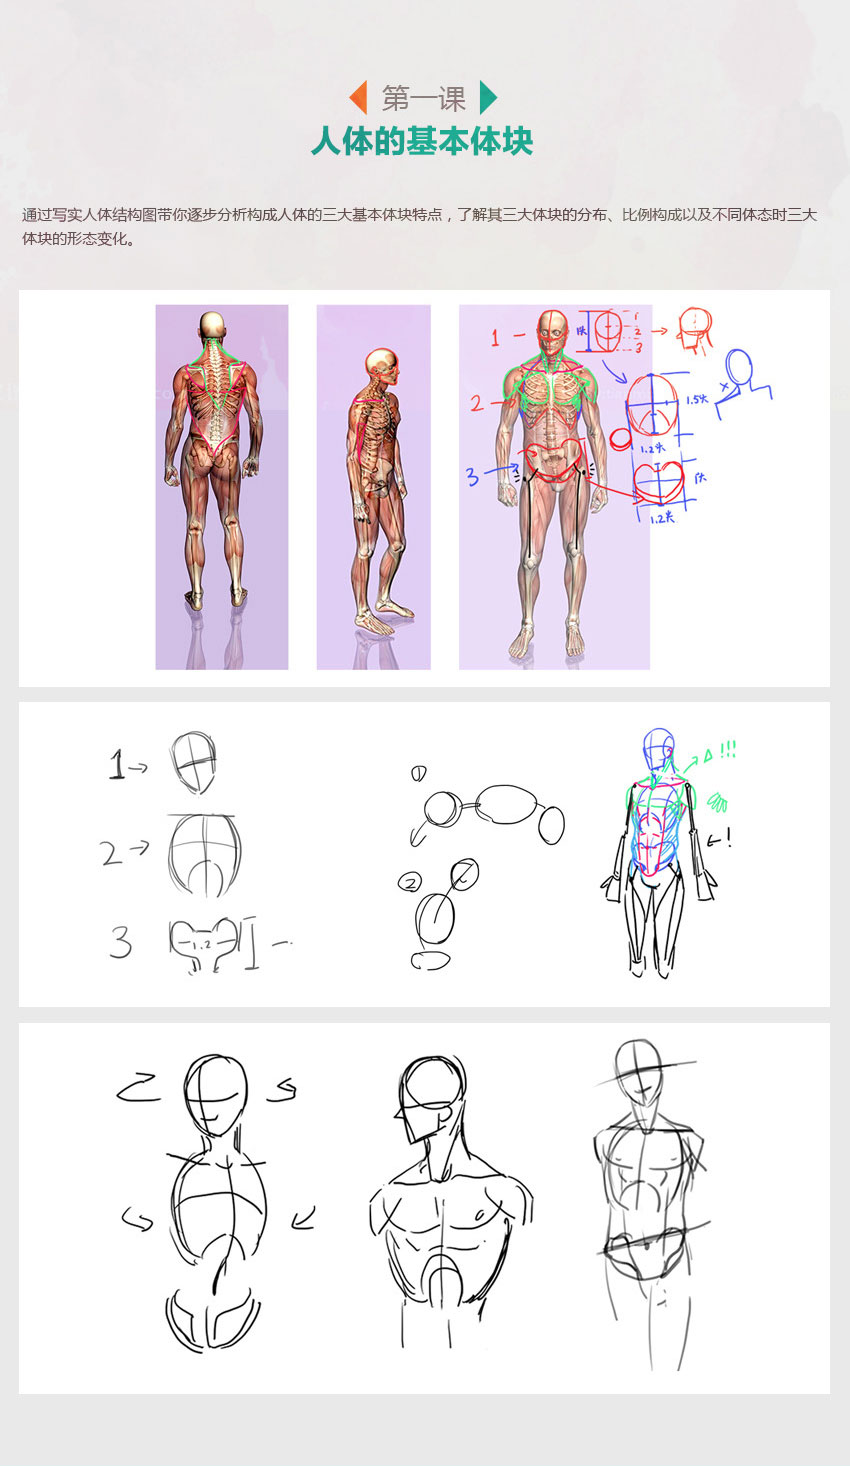 零基础，快速入门漫画人体绘画！_系统全面的平面设计培训、自学教程推荐,尽在平面设计学习日记网(www.xxriji.cn)